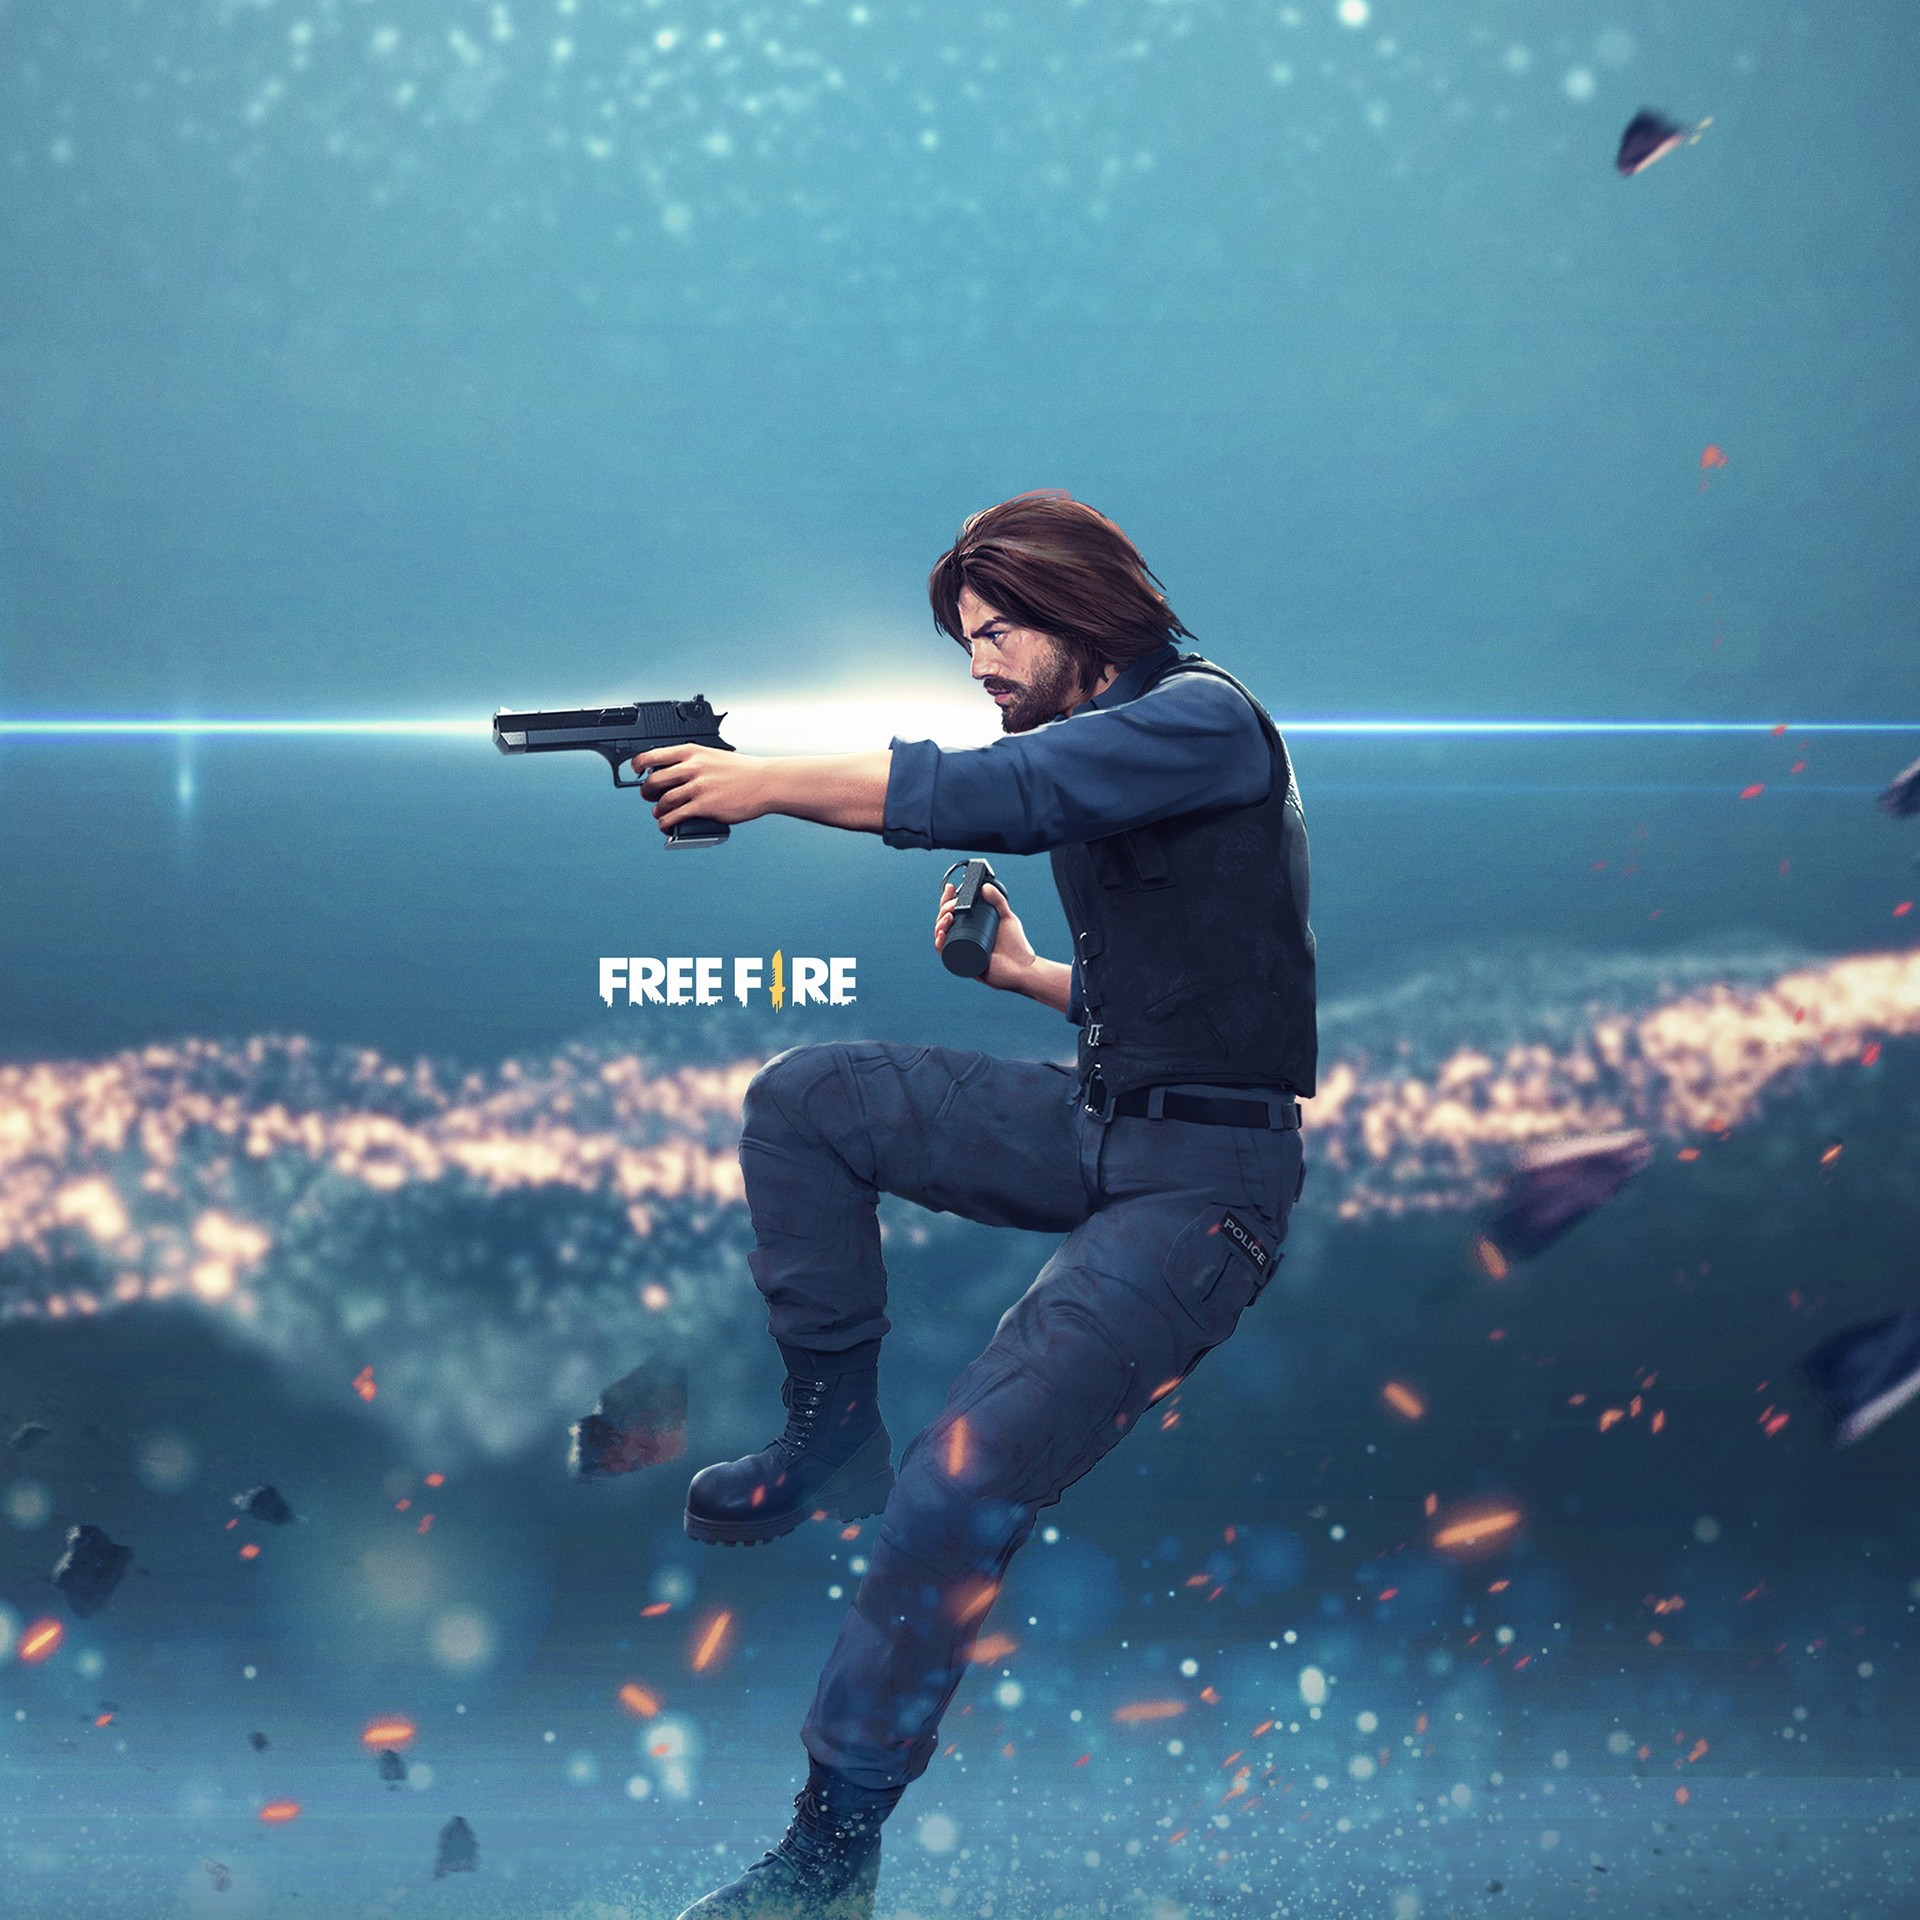 Imagens de Free Fire Max, jogo com gráficos melhorados, surgem na